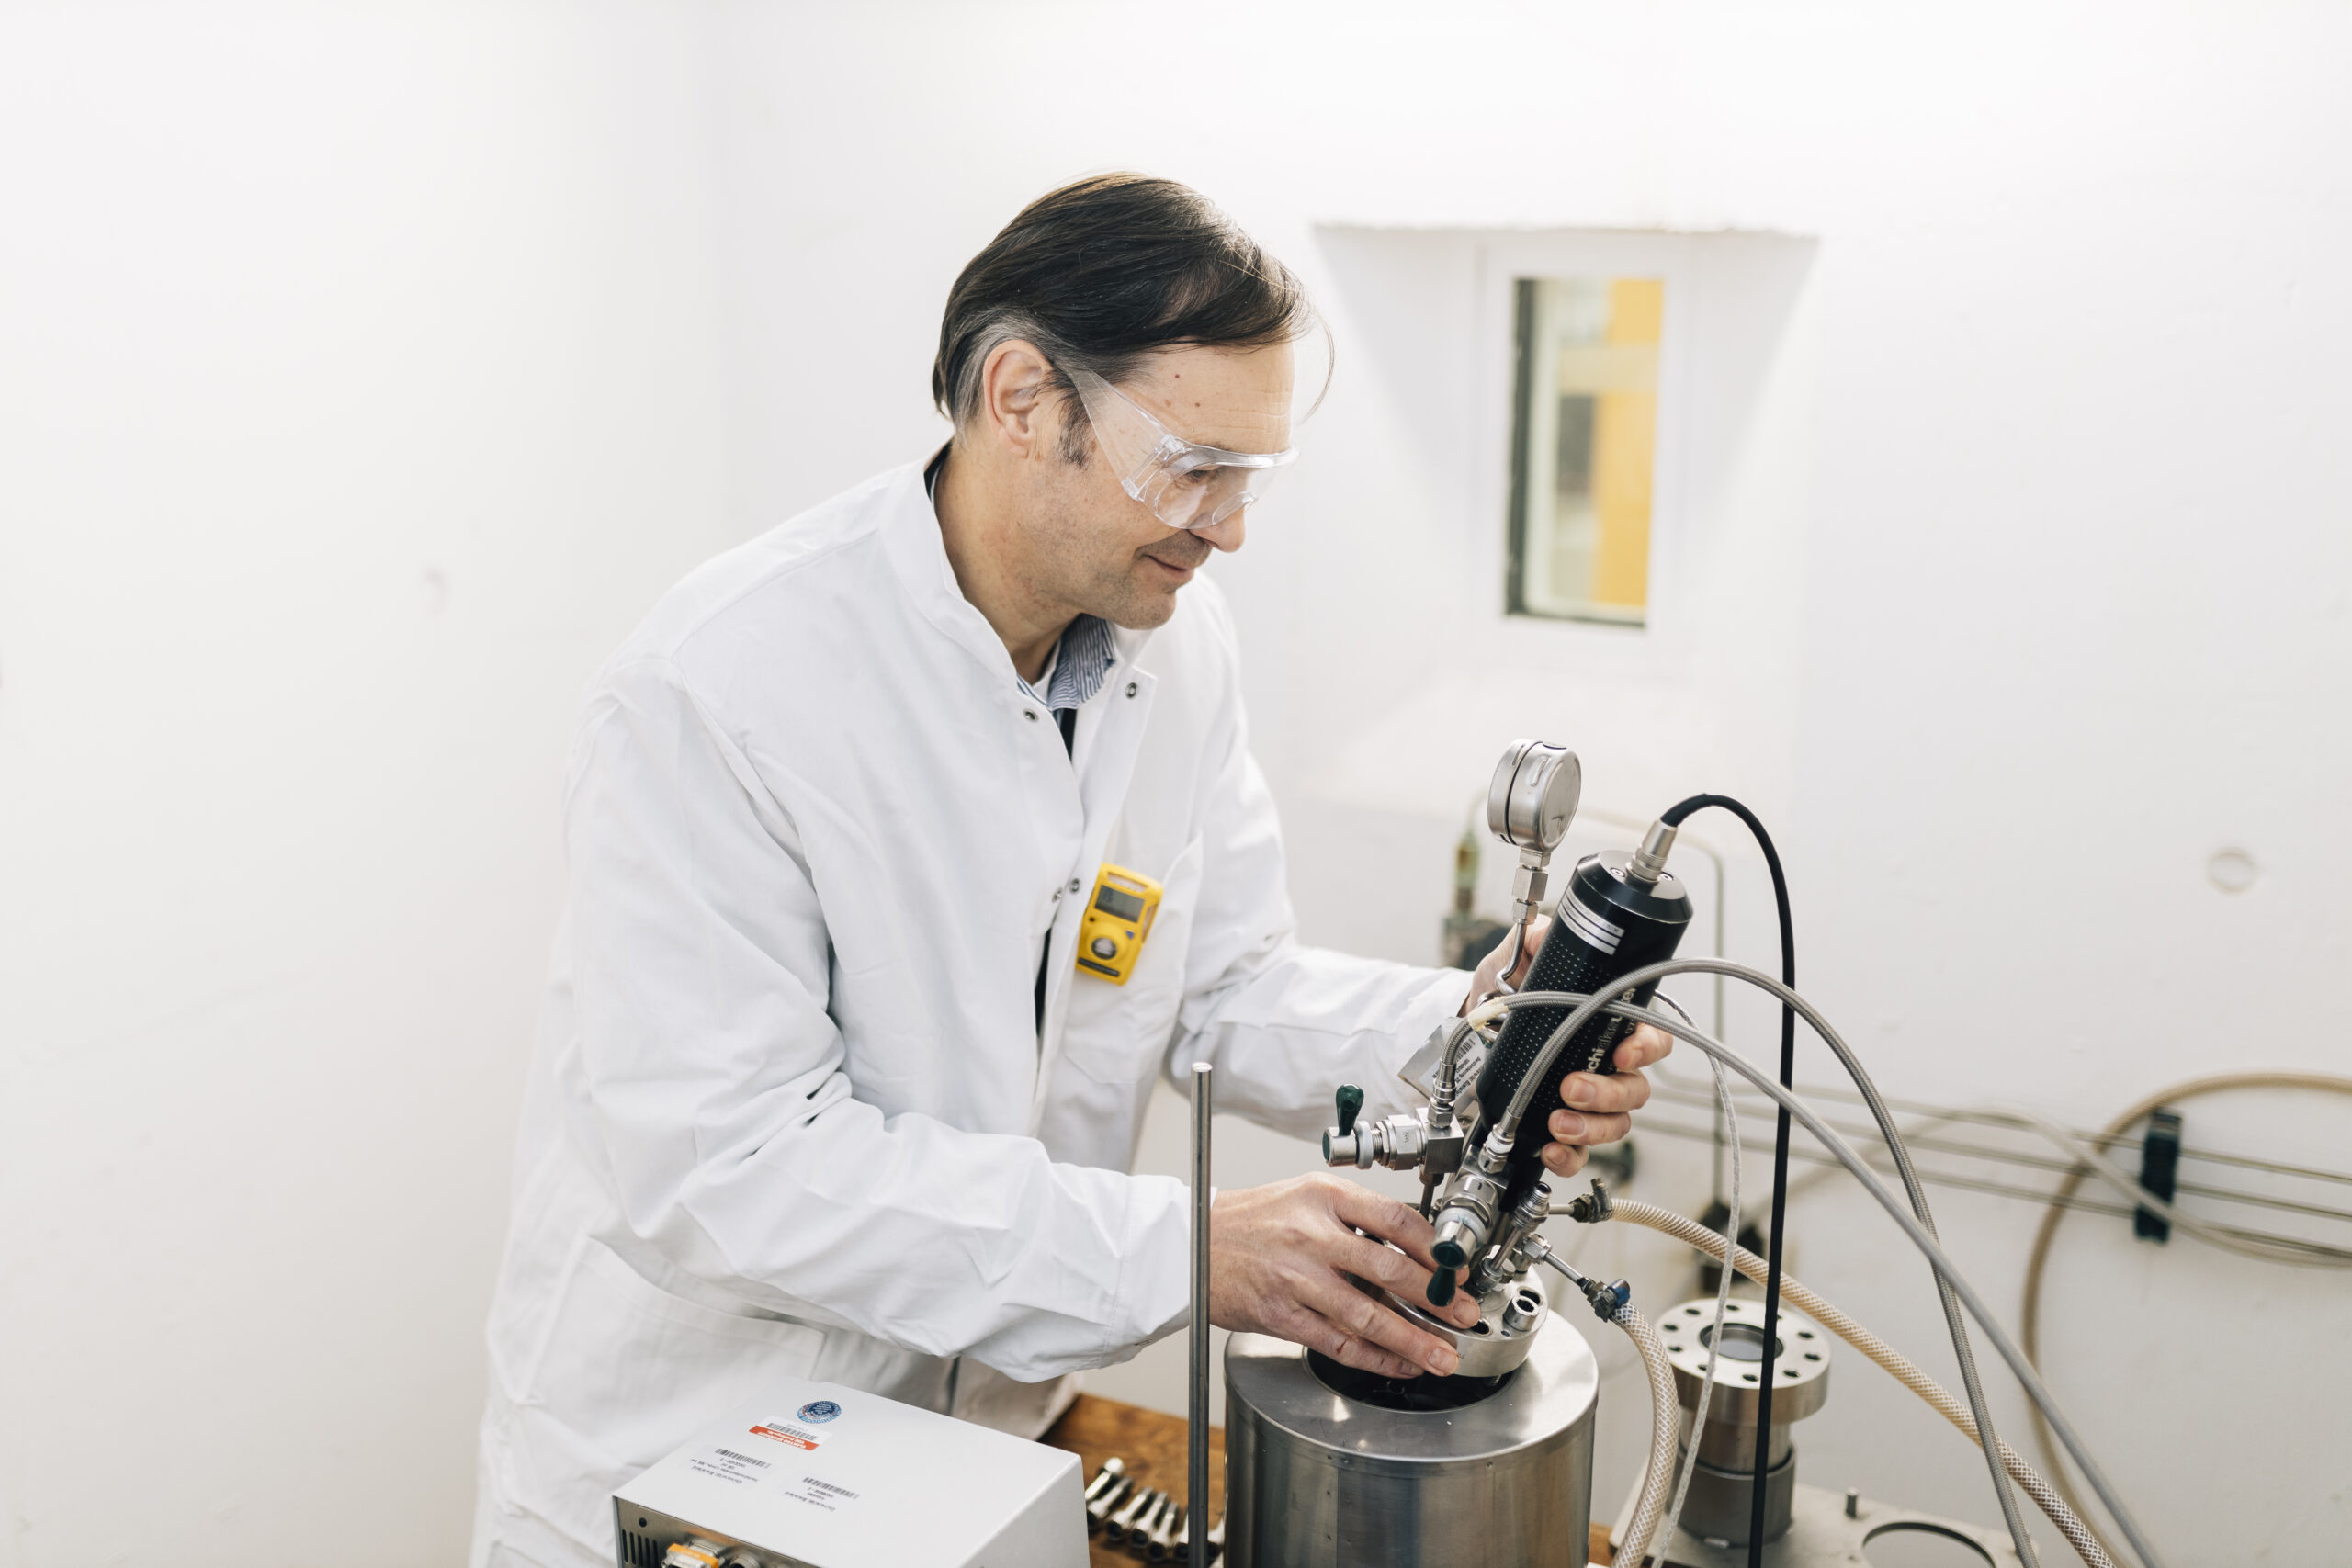 Prof. Dr. Harald Gröger im Laborkittel bedient ein Messgerät.